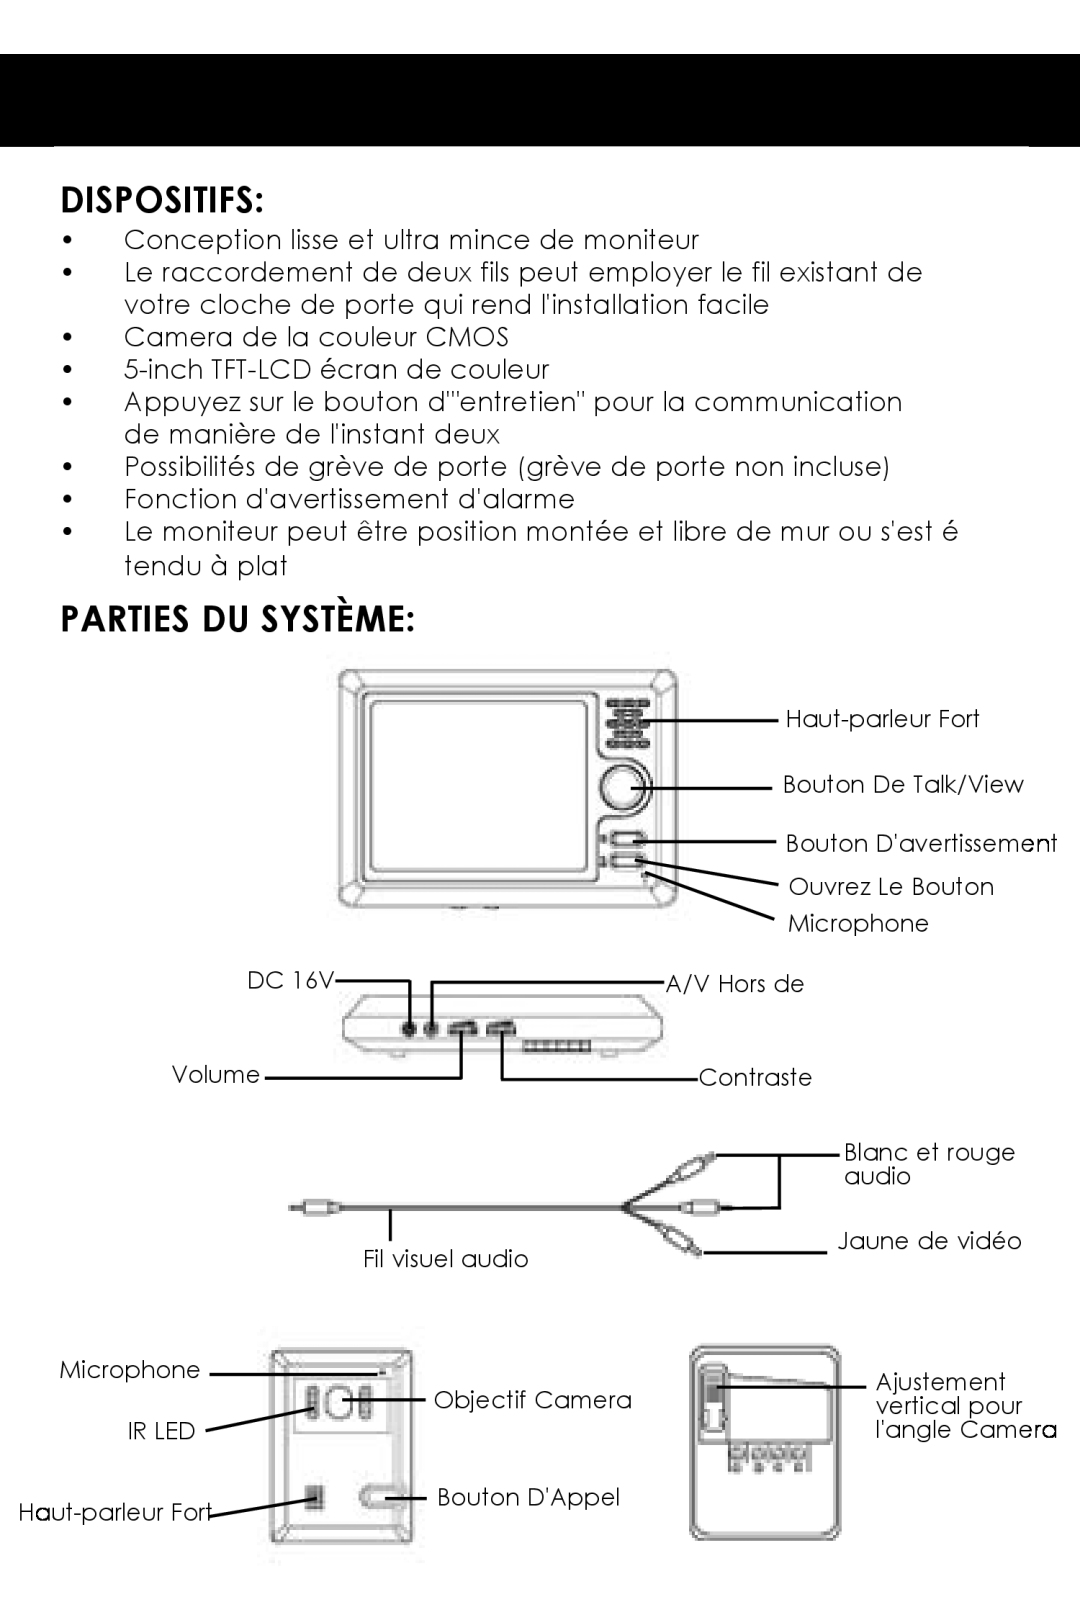 SVAT Electronics VISS7500 user manual Dispositifs, Parties Du Système 